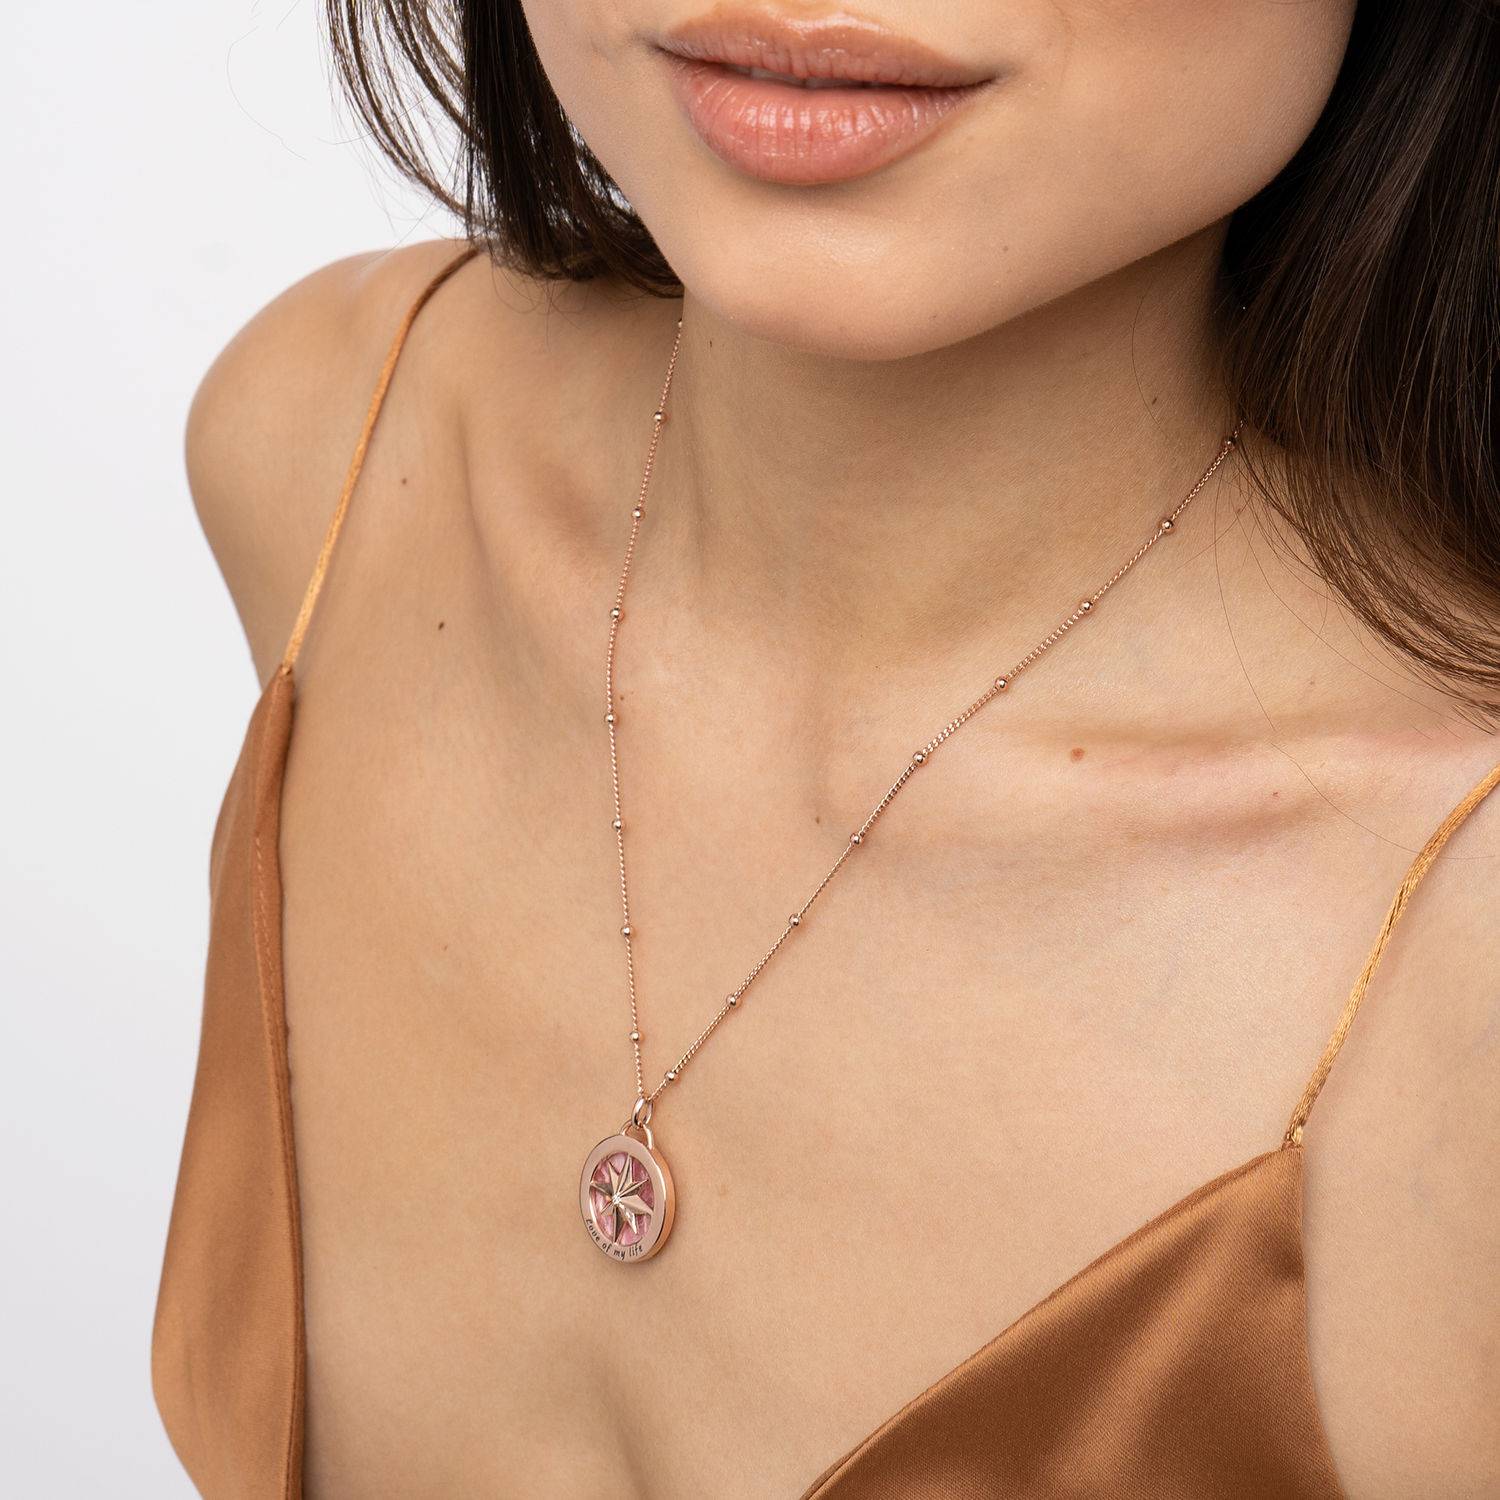 Collar de brújula grabada con Piedra Semipreciosa en Chapa de oro Rosa de 18K-3 foto de producto